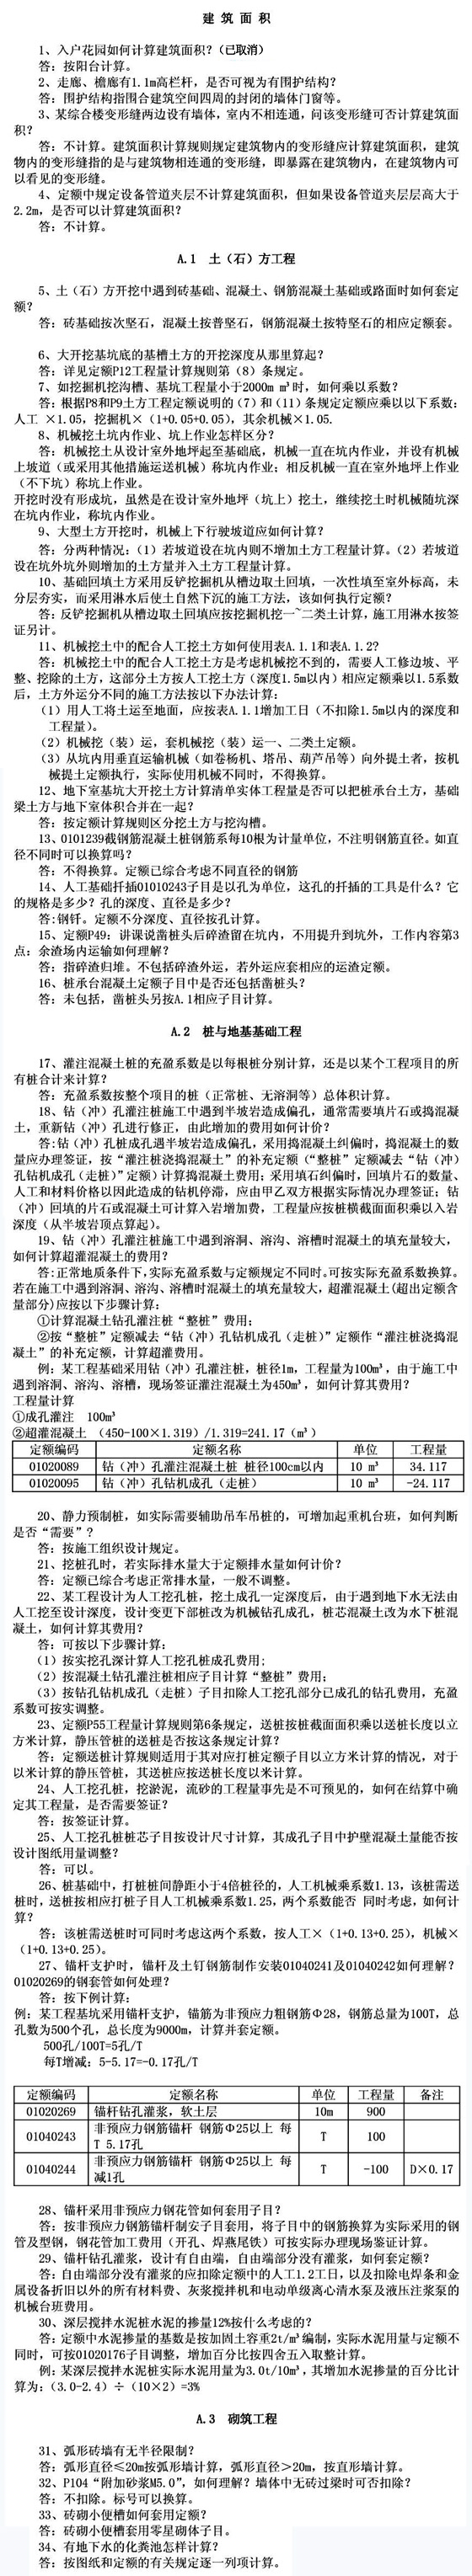 2005《广西壮族自治区建筑工程消耗量定额》解释（一）